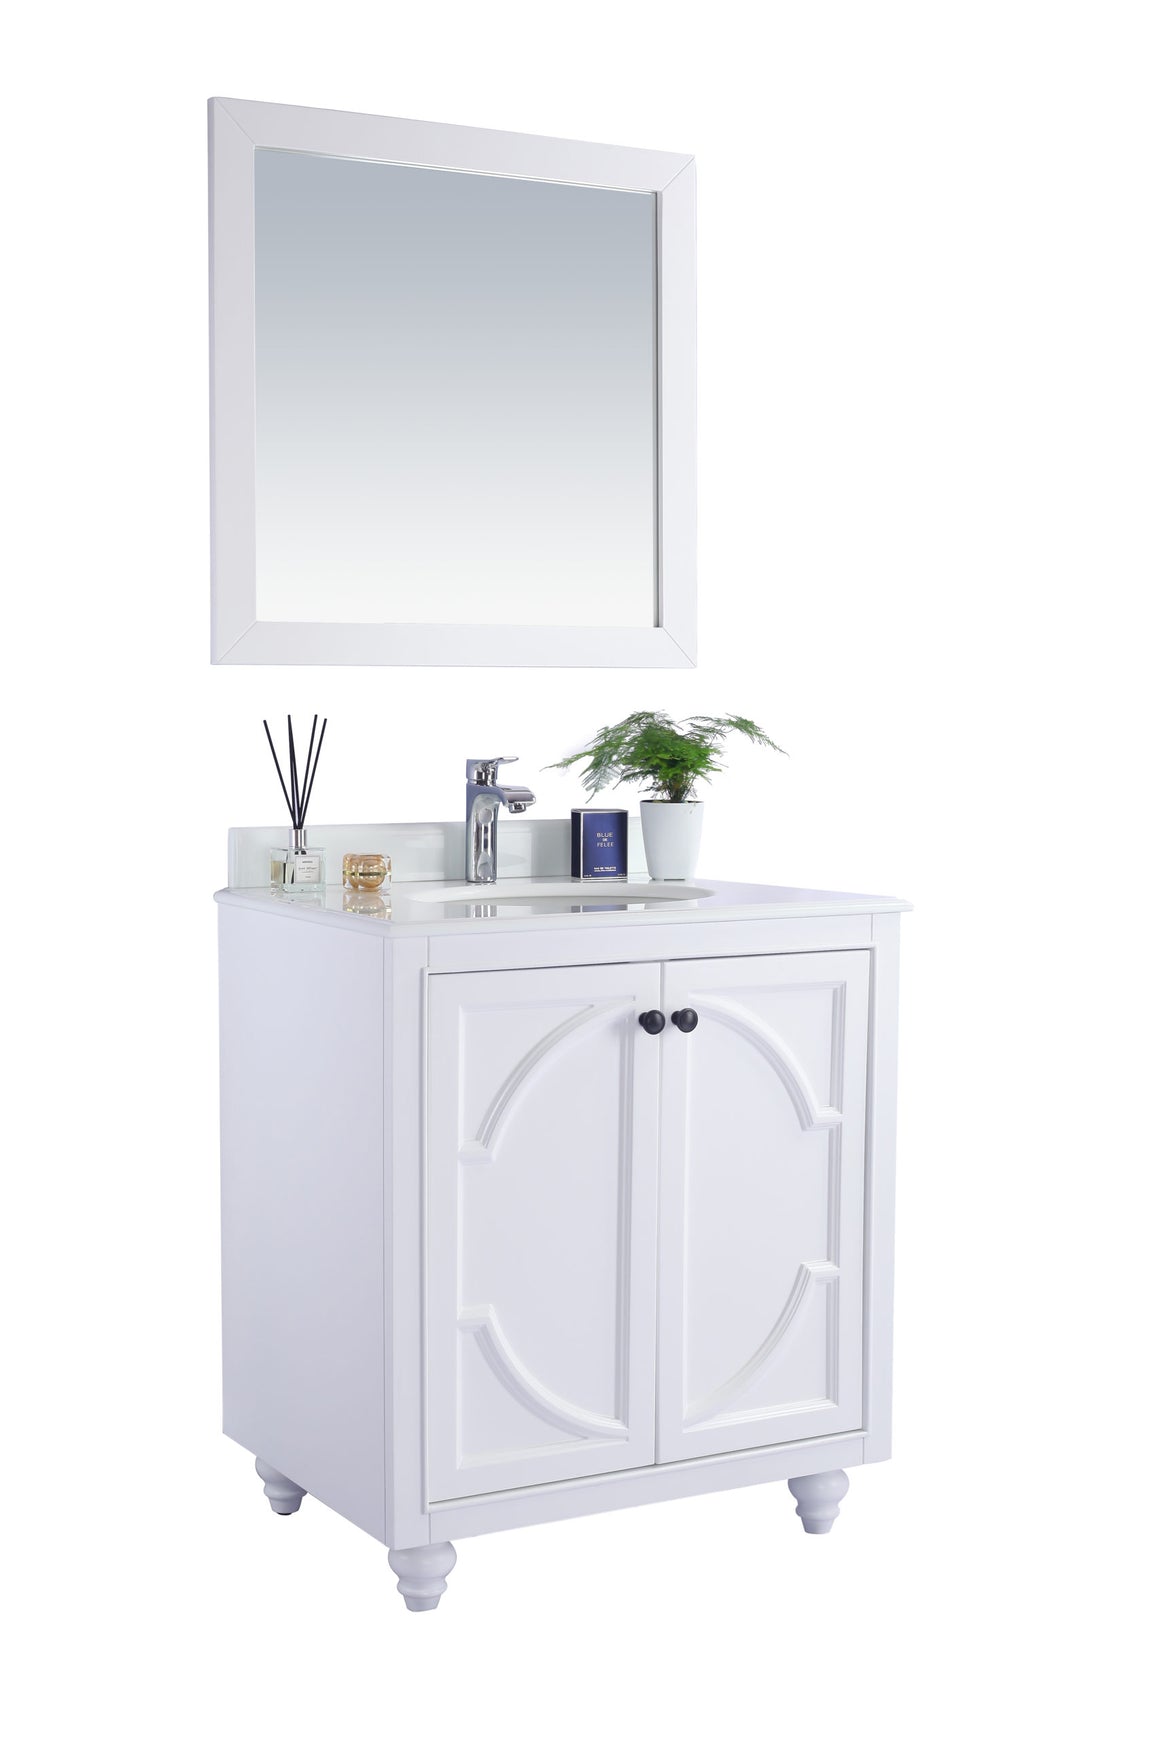 Odyssey - 30 - White Cabinet + Pure White Phoenix Stone Countertop